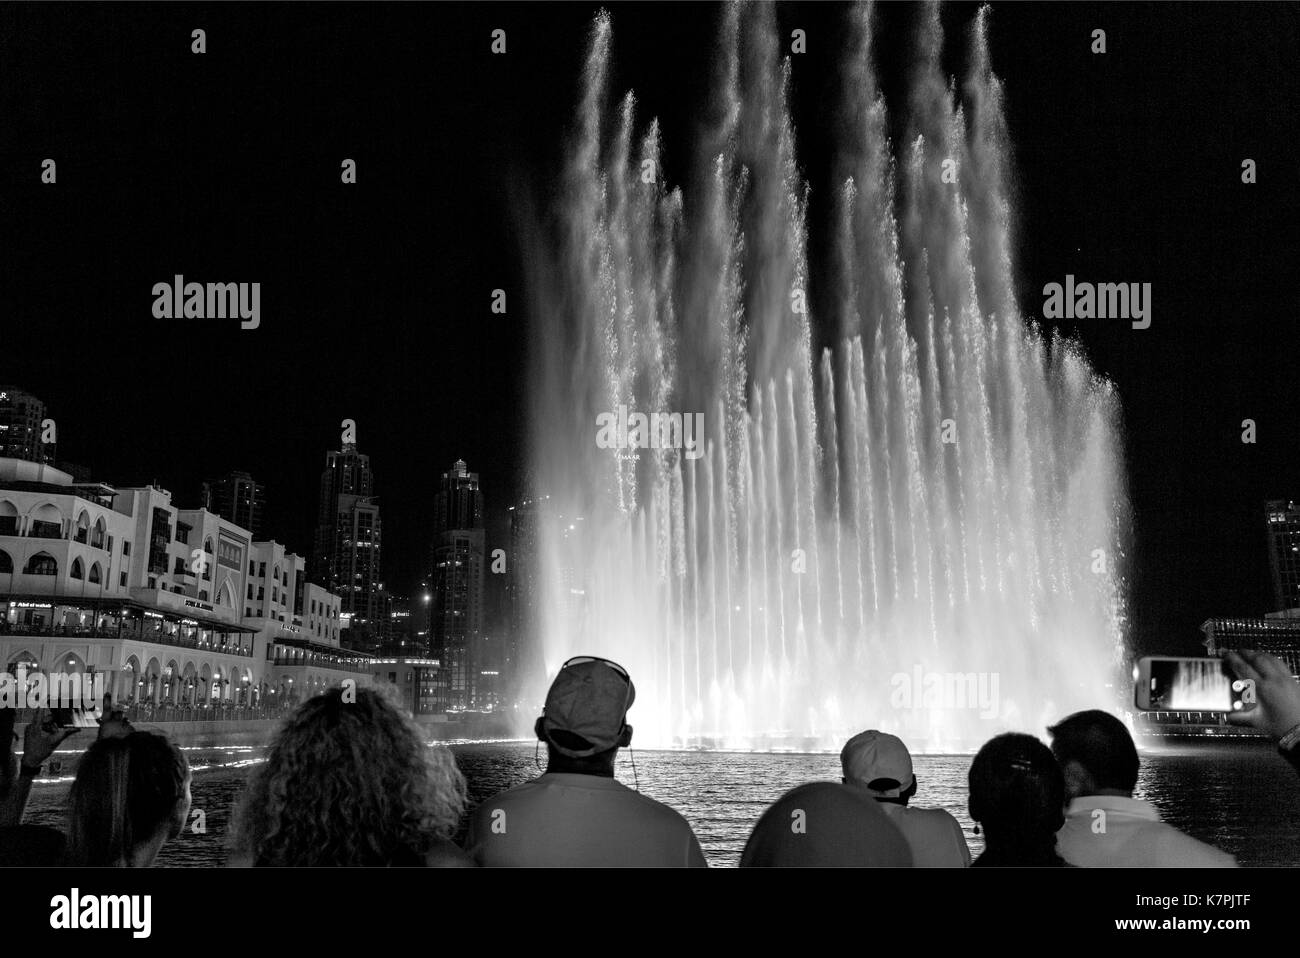 La fontana di Dubai è il secondo più grande la coreografia fontana con uno spettacolo mozzafiato di luoghi e suoni. Foto Stock